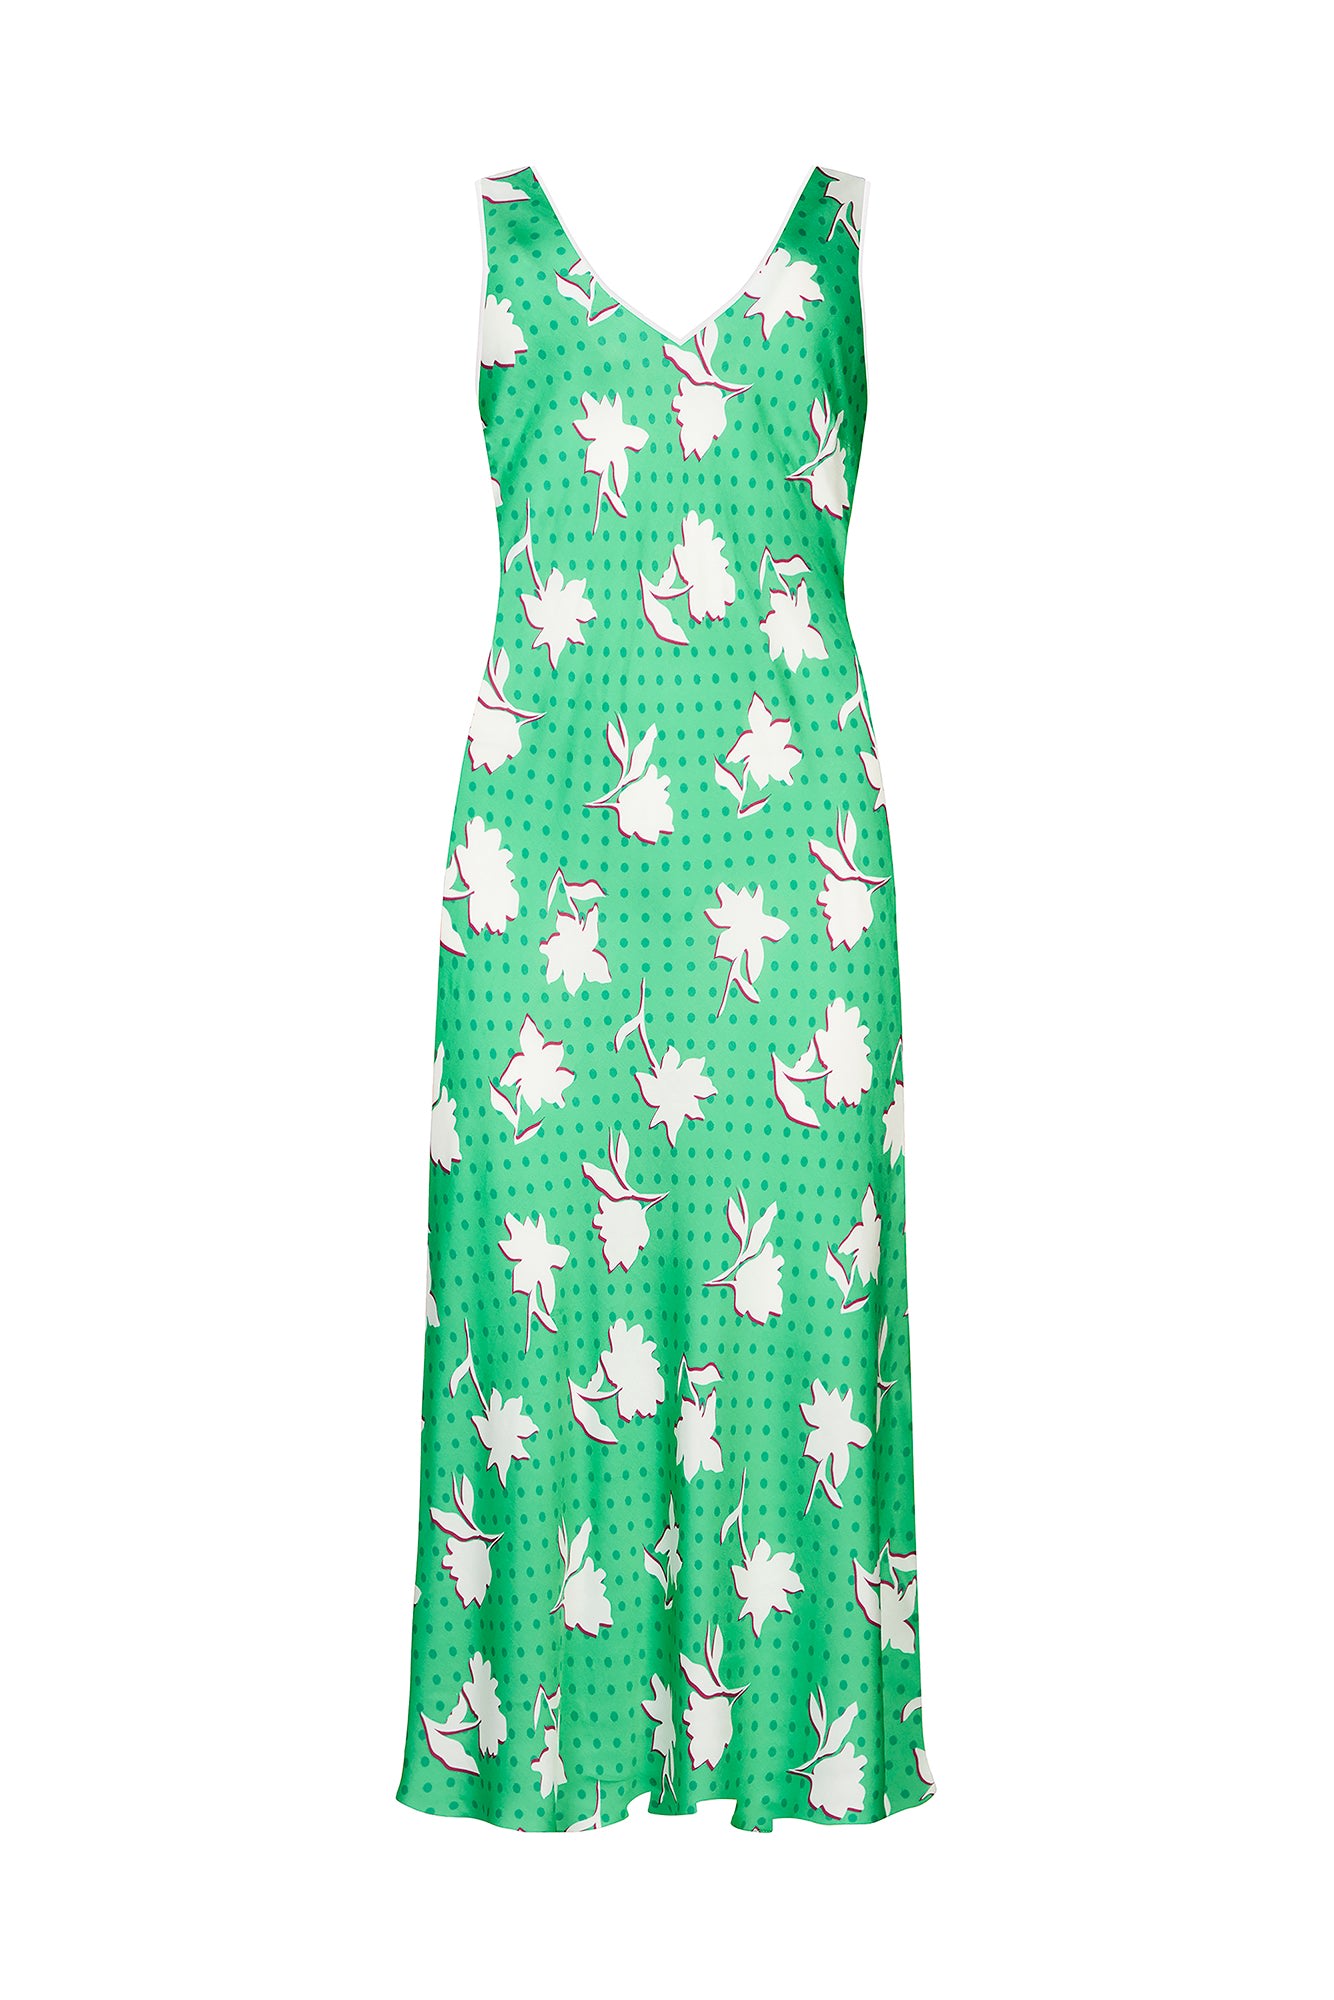 Women’s Green Polka Dot Floral Slip Dress Extra Small Mirla Beane